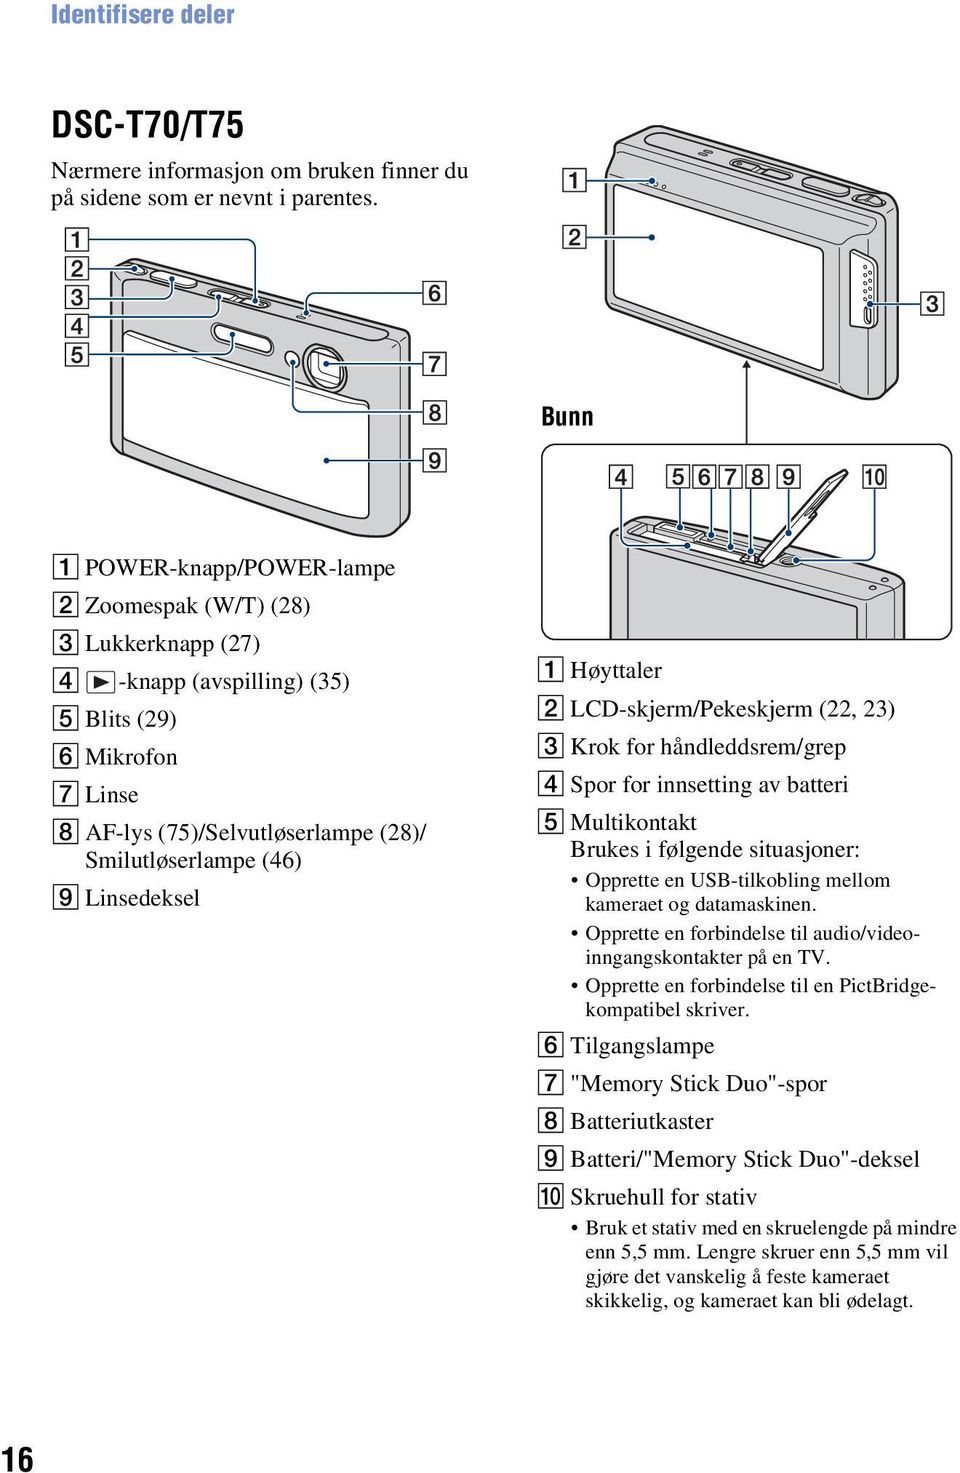 Linsedeksel A Høyttaler B LCD-skjerm/Pekeskjerm (22, 23) C Krok for håndleddsrem/grep D Spor for innsetting av batteri E Multikontakt Brukes i følgende situasjoner: Opprette en USB-tilkobling mellom